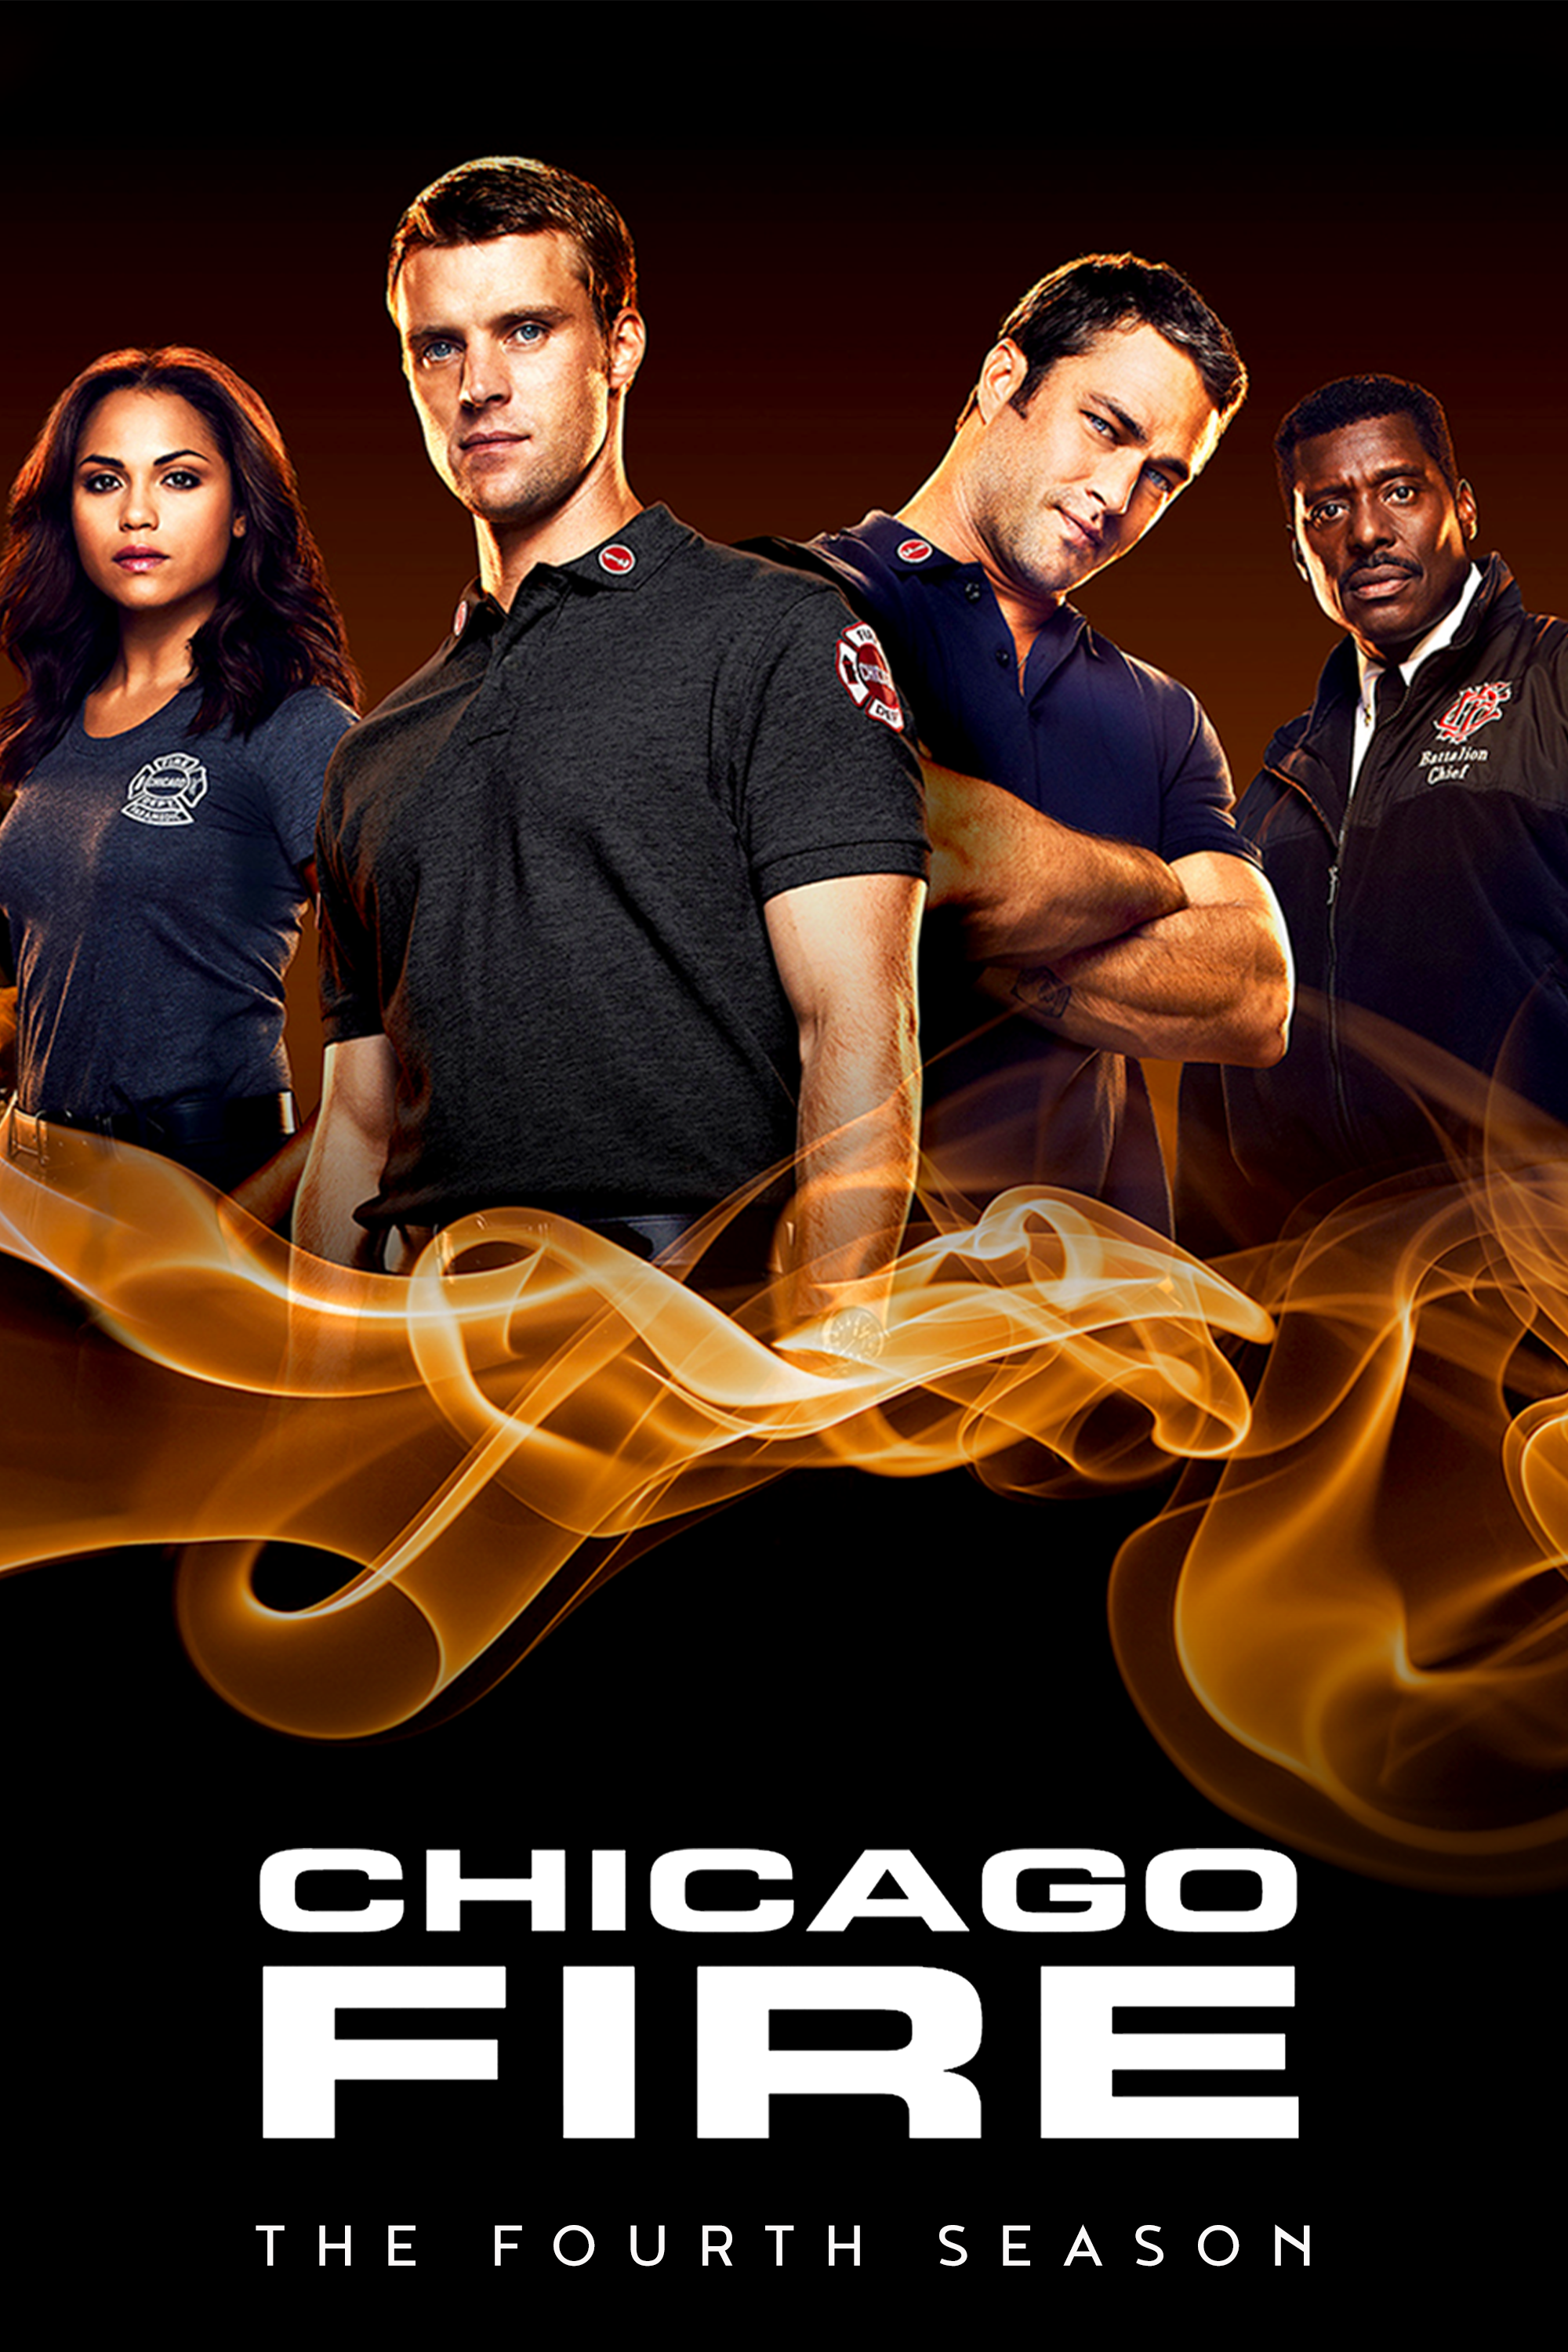 ดูหนังออนไลน์ฟรี Chicago Fire Season 4 EP.12 ชิคาโก้ ไฟร์ หน่วยดับเพลิงท้านรก ซีซั่นที่ 4 ตอนที่ 12